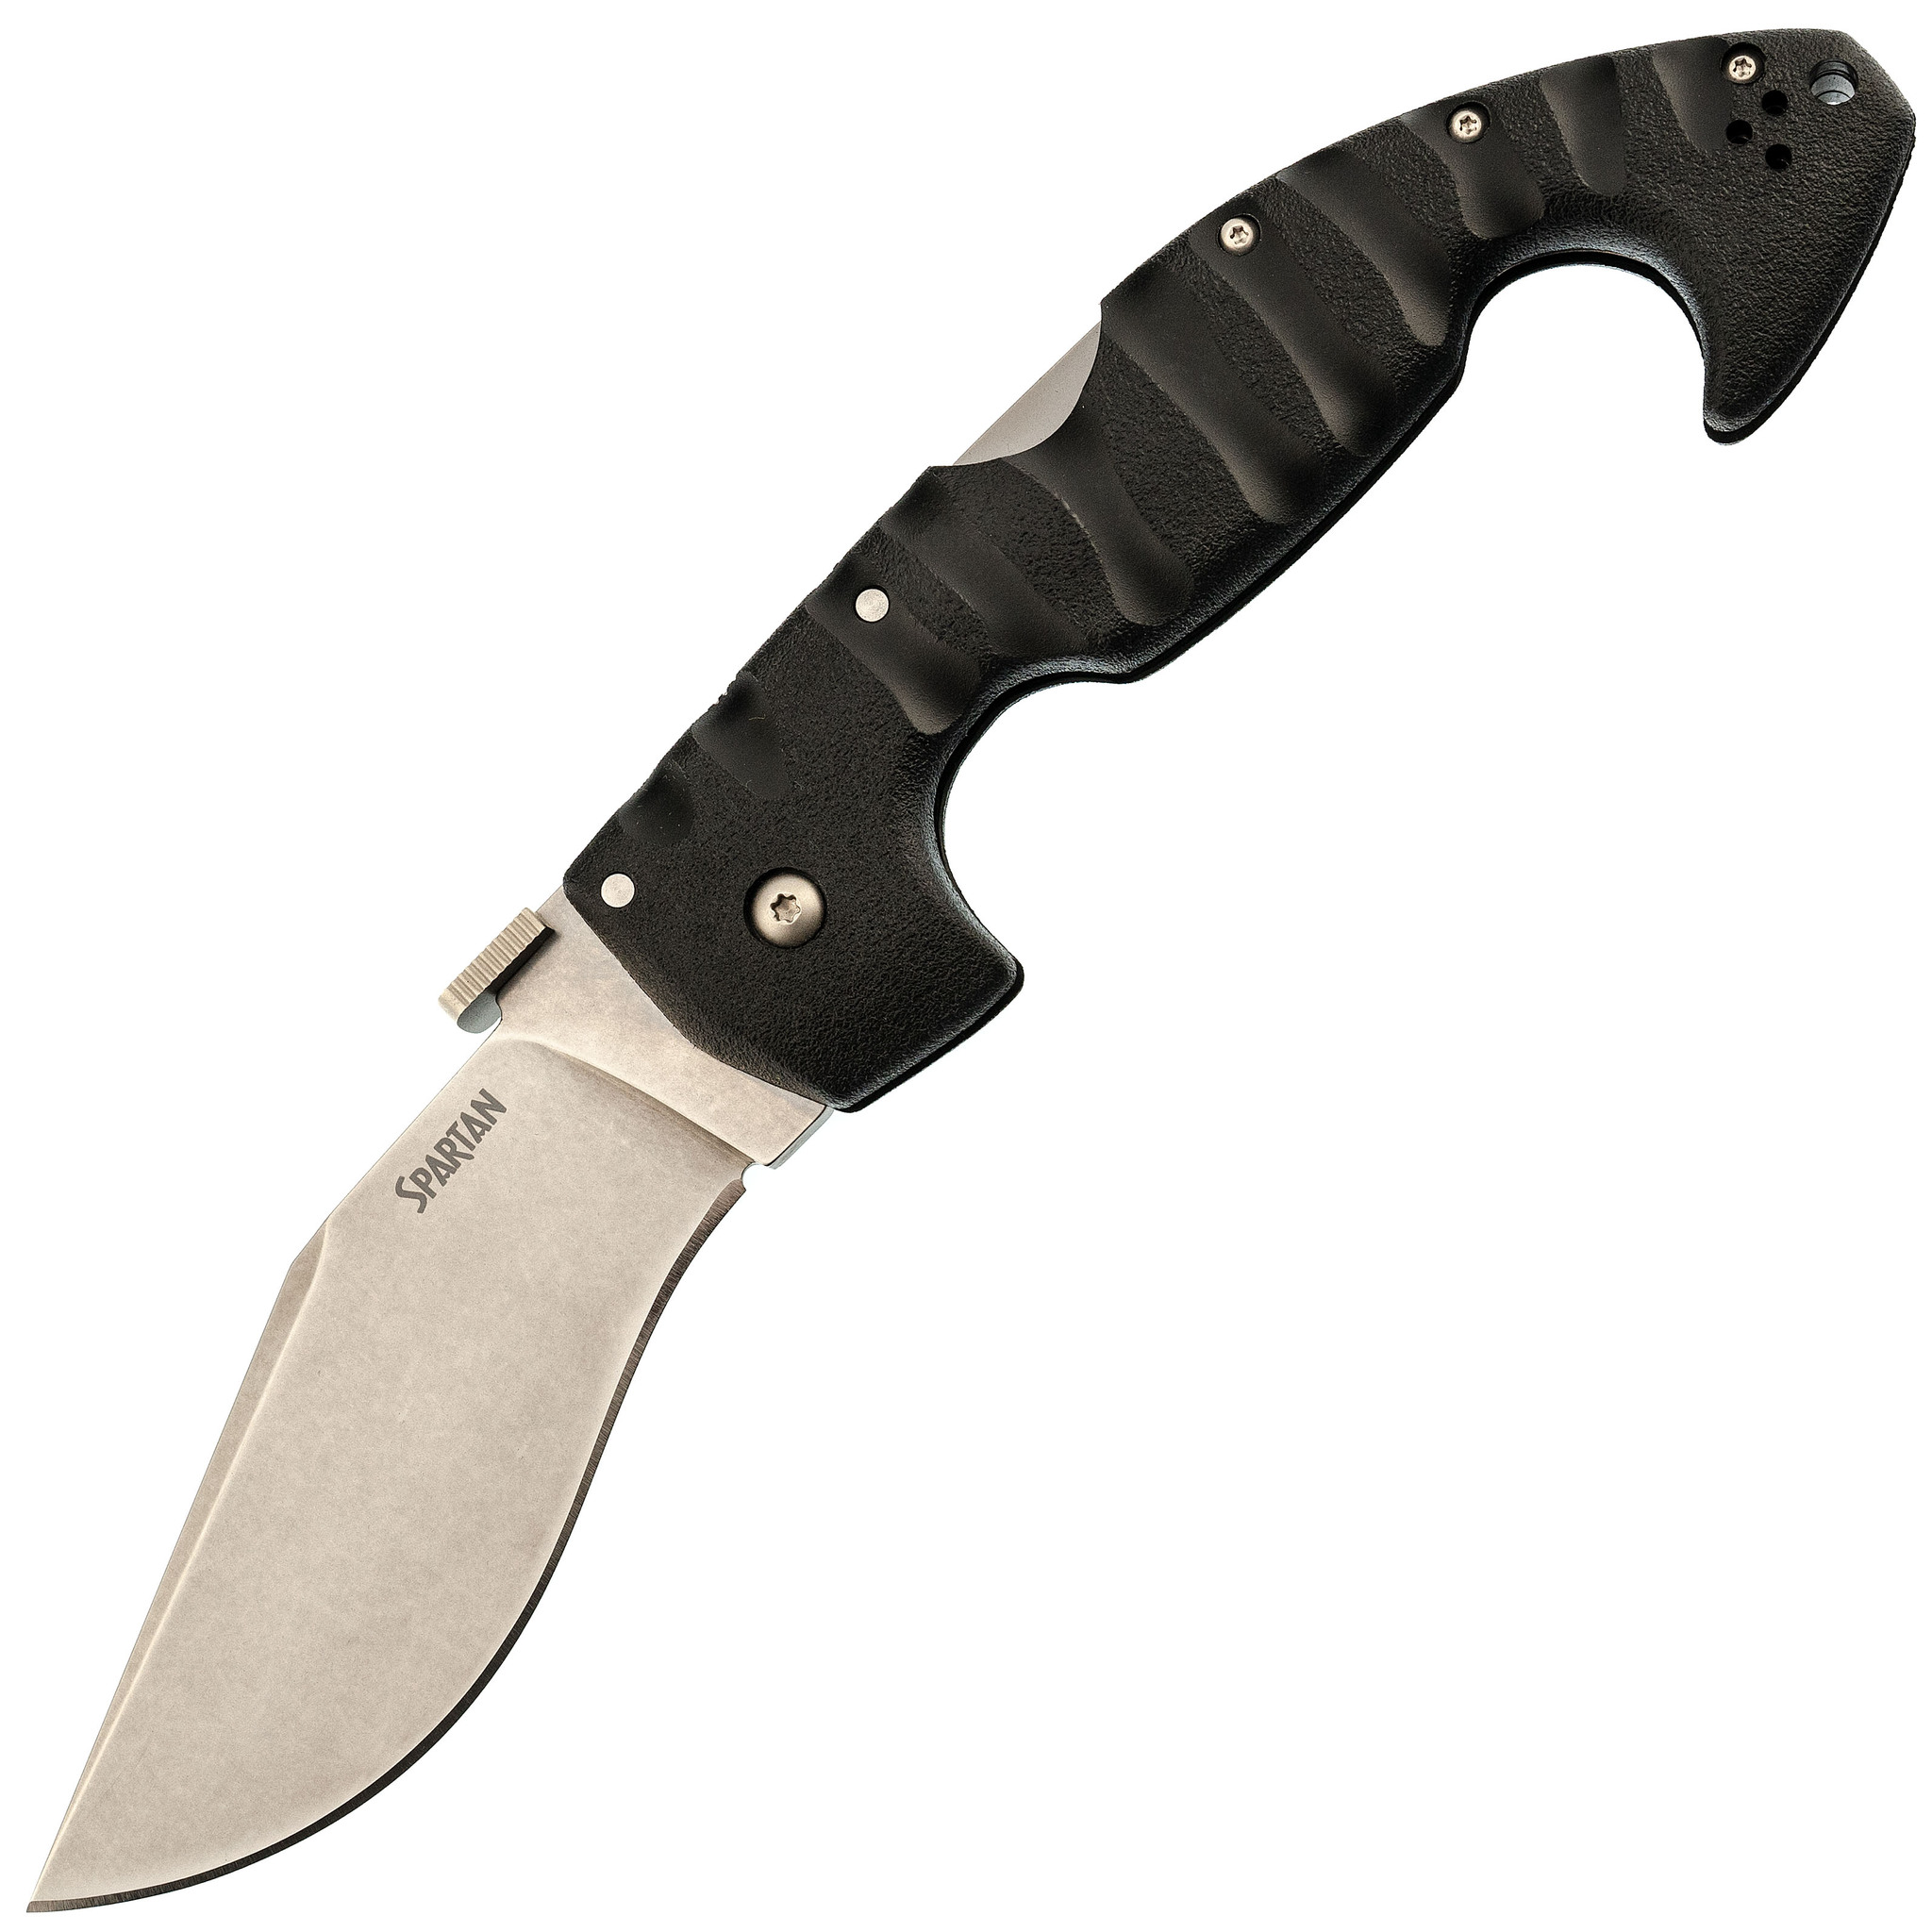 Нож складной Cold Steel Spartan, сталь AUS-10A, рукоять grivory, black складной угломер уровень зубр